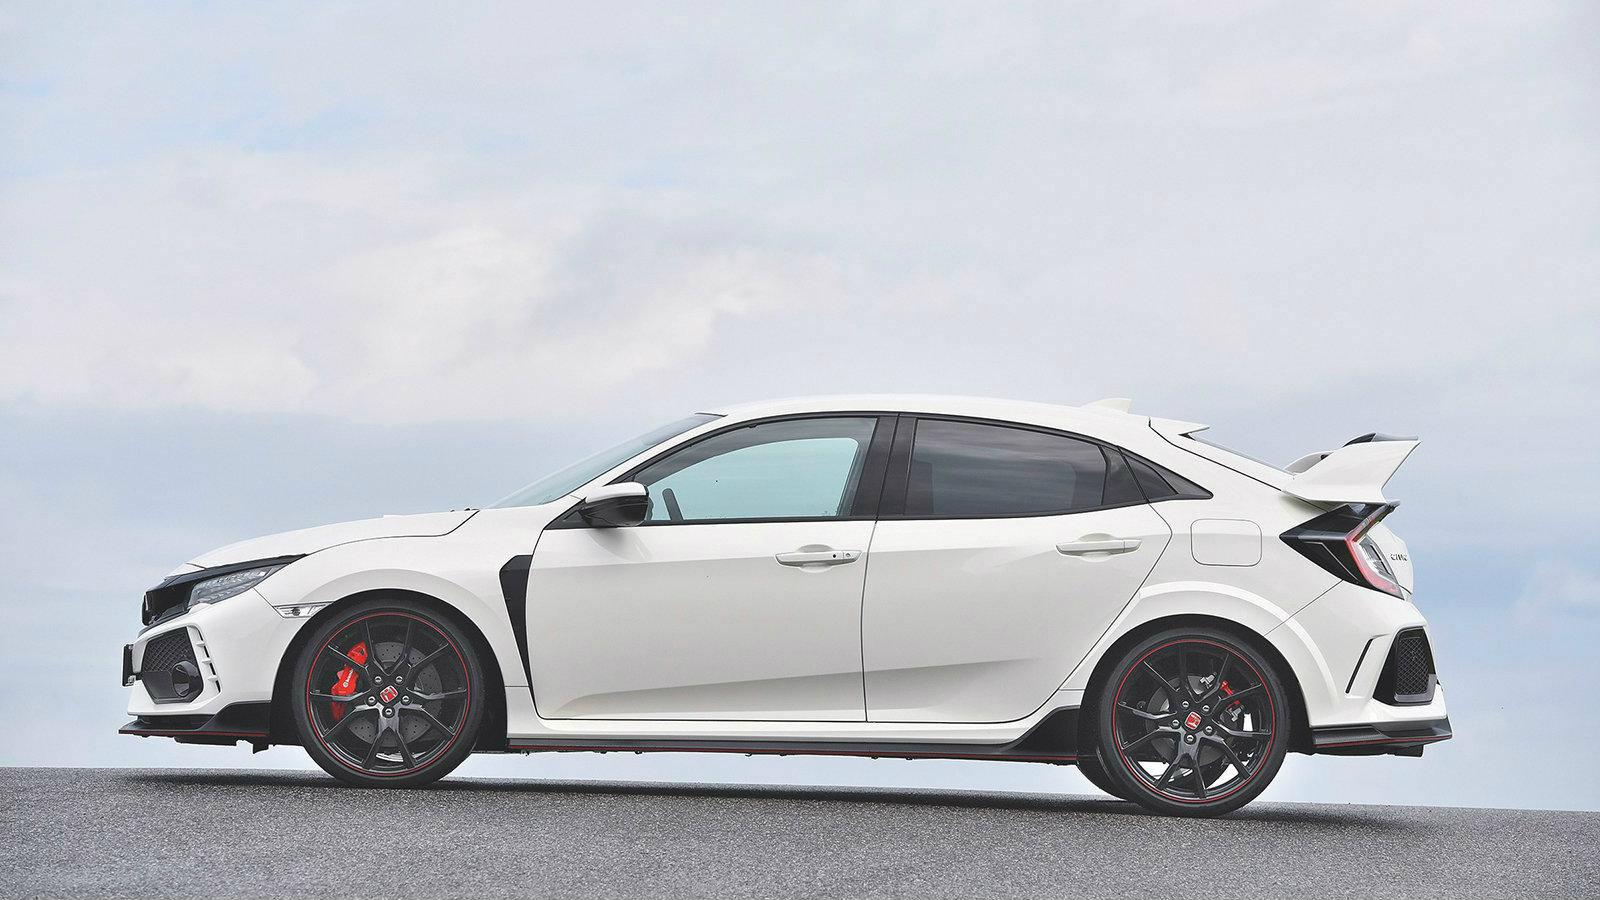 Η καλύτερη επιλογή για όσους θέλουν το απόλυτο sport hatchback είναι το πιο sport Honda στη γκάμα της Ιαπωνικής εταιρείας.